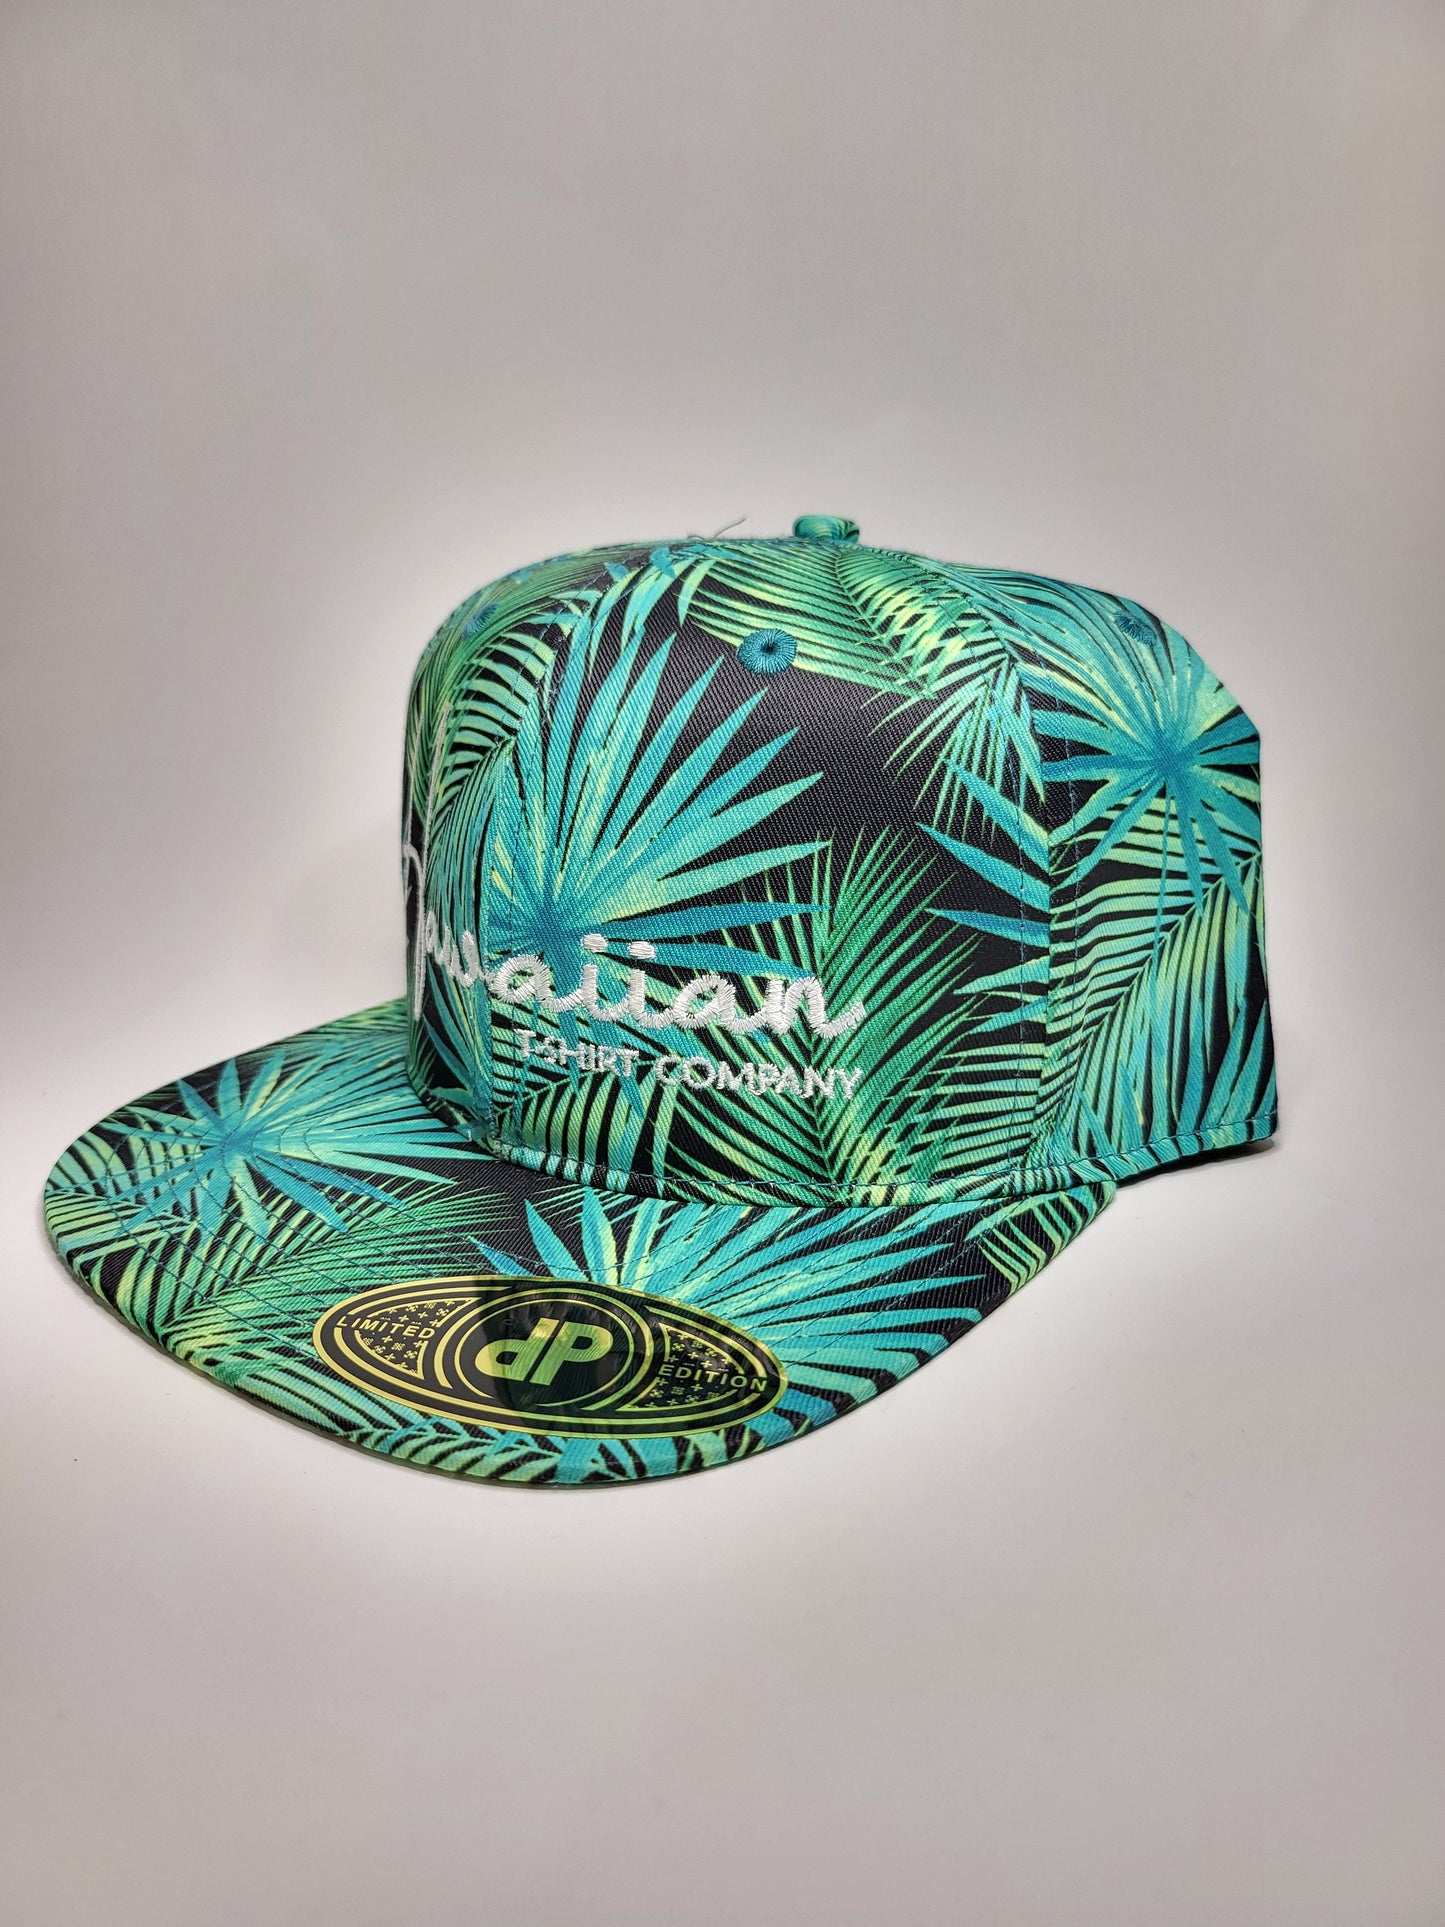 Hats "Green Fan Palm" Flatbill Snapback